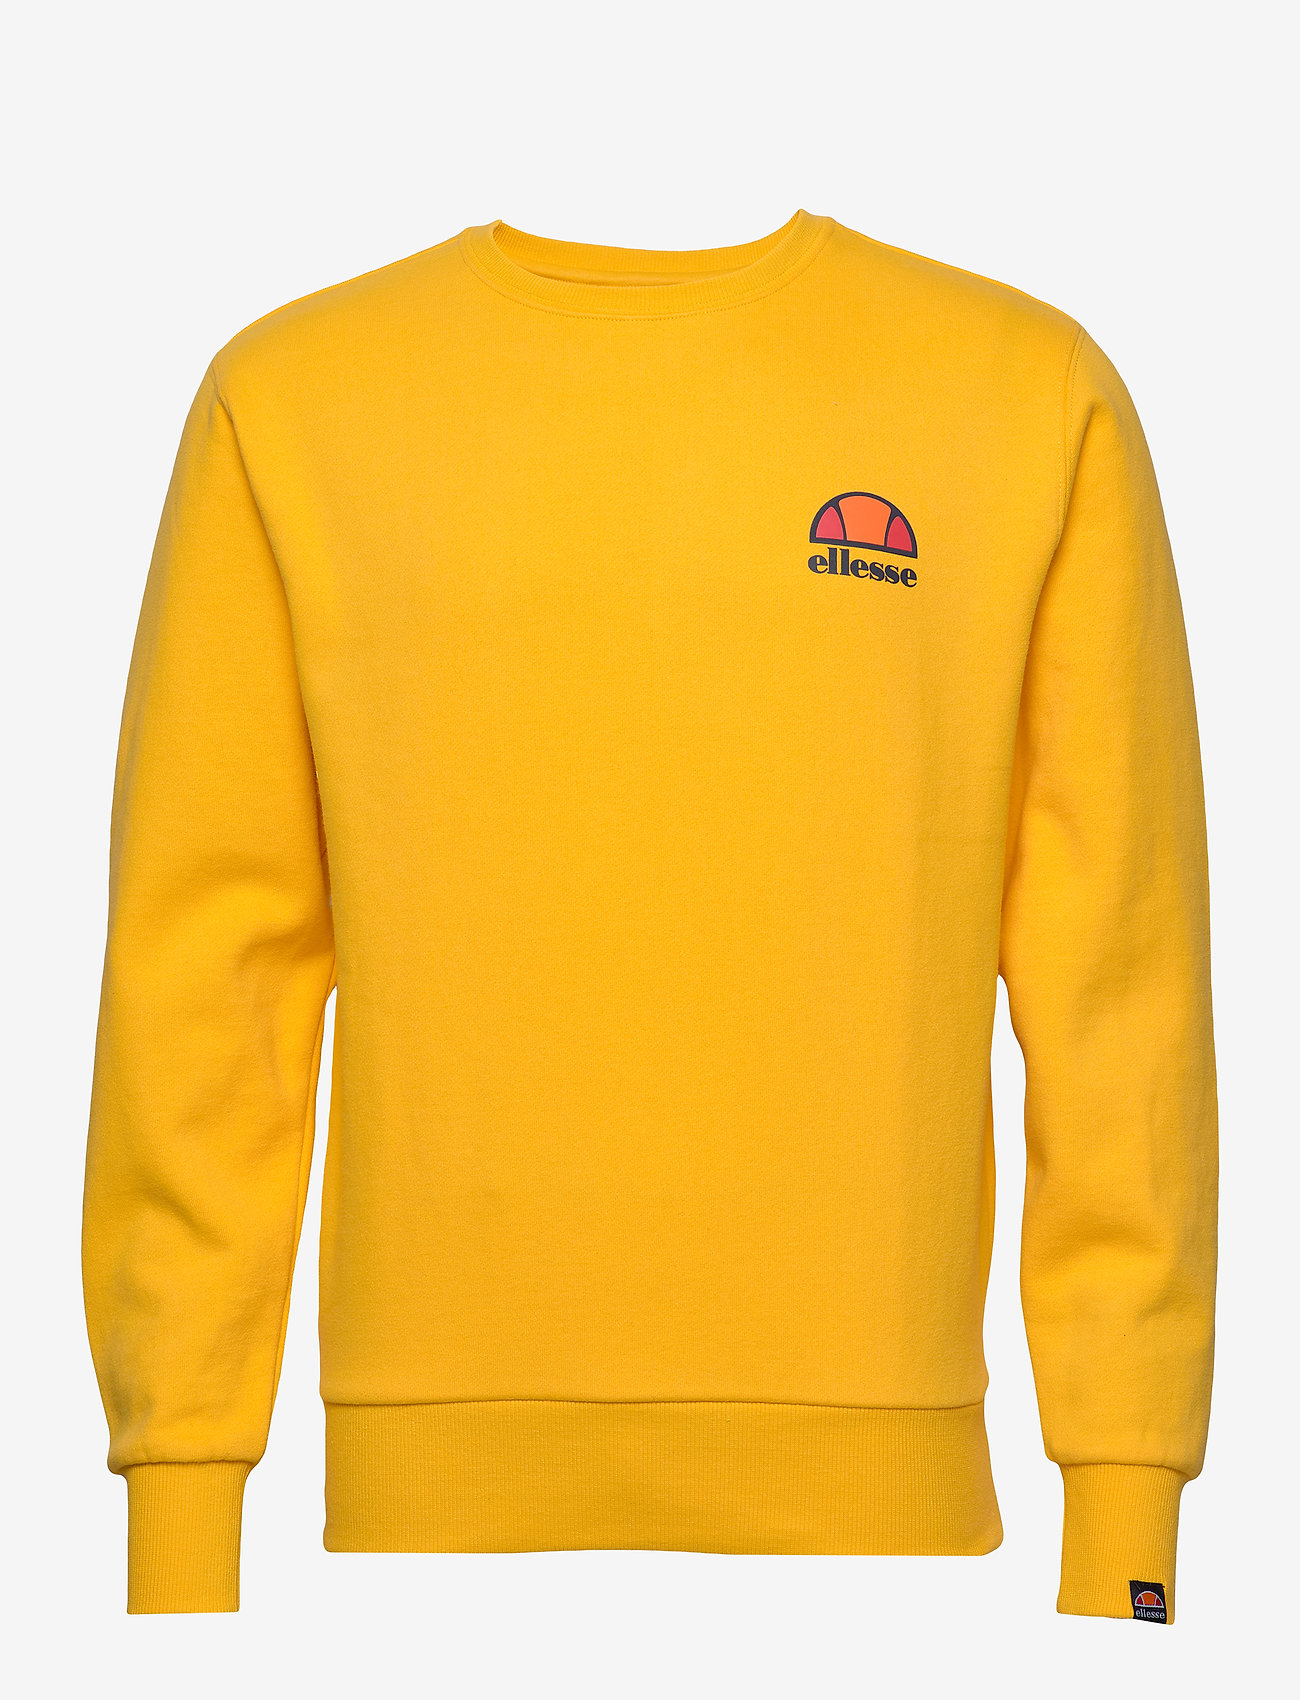 El Diveria Sweatshirt (Yellow) (52 